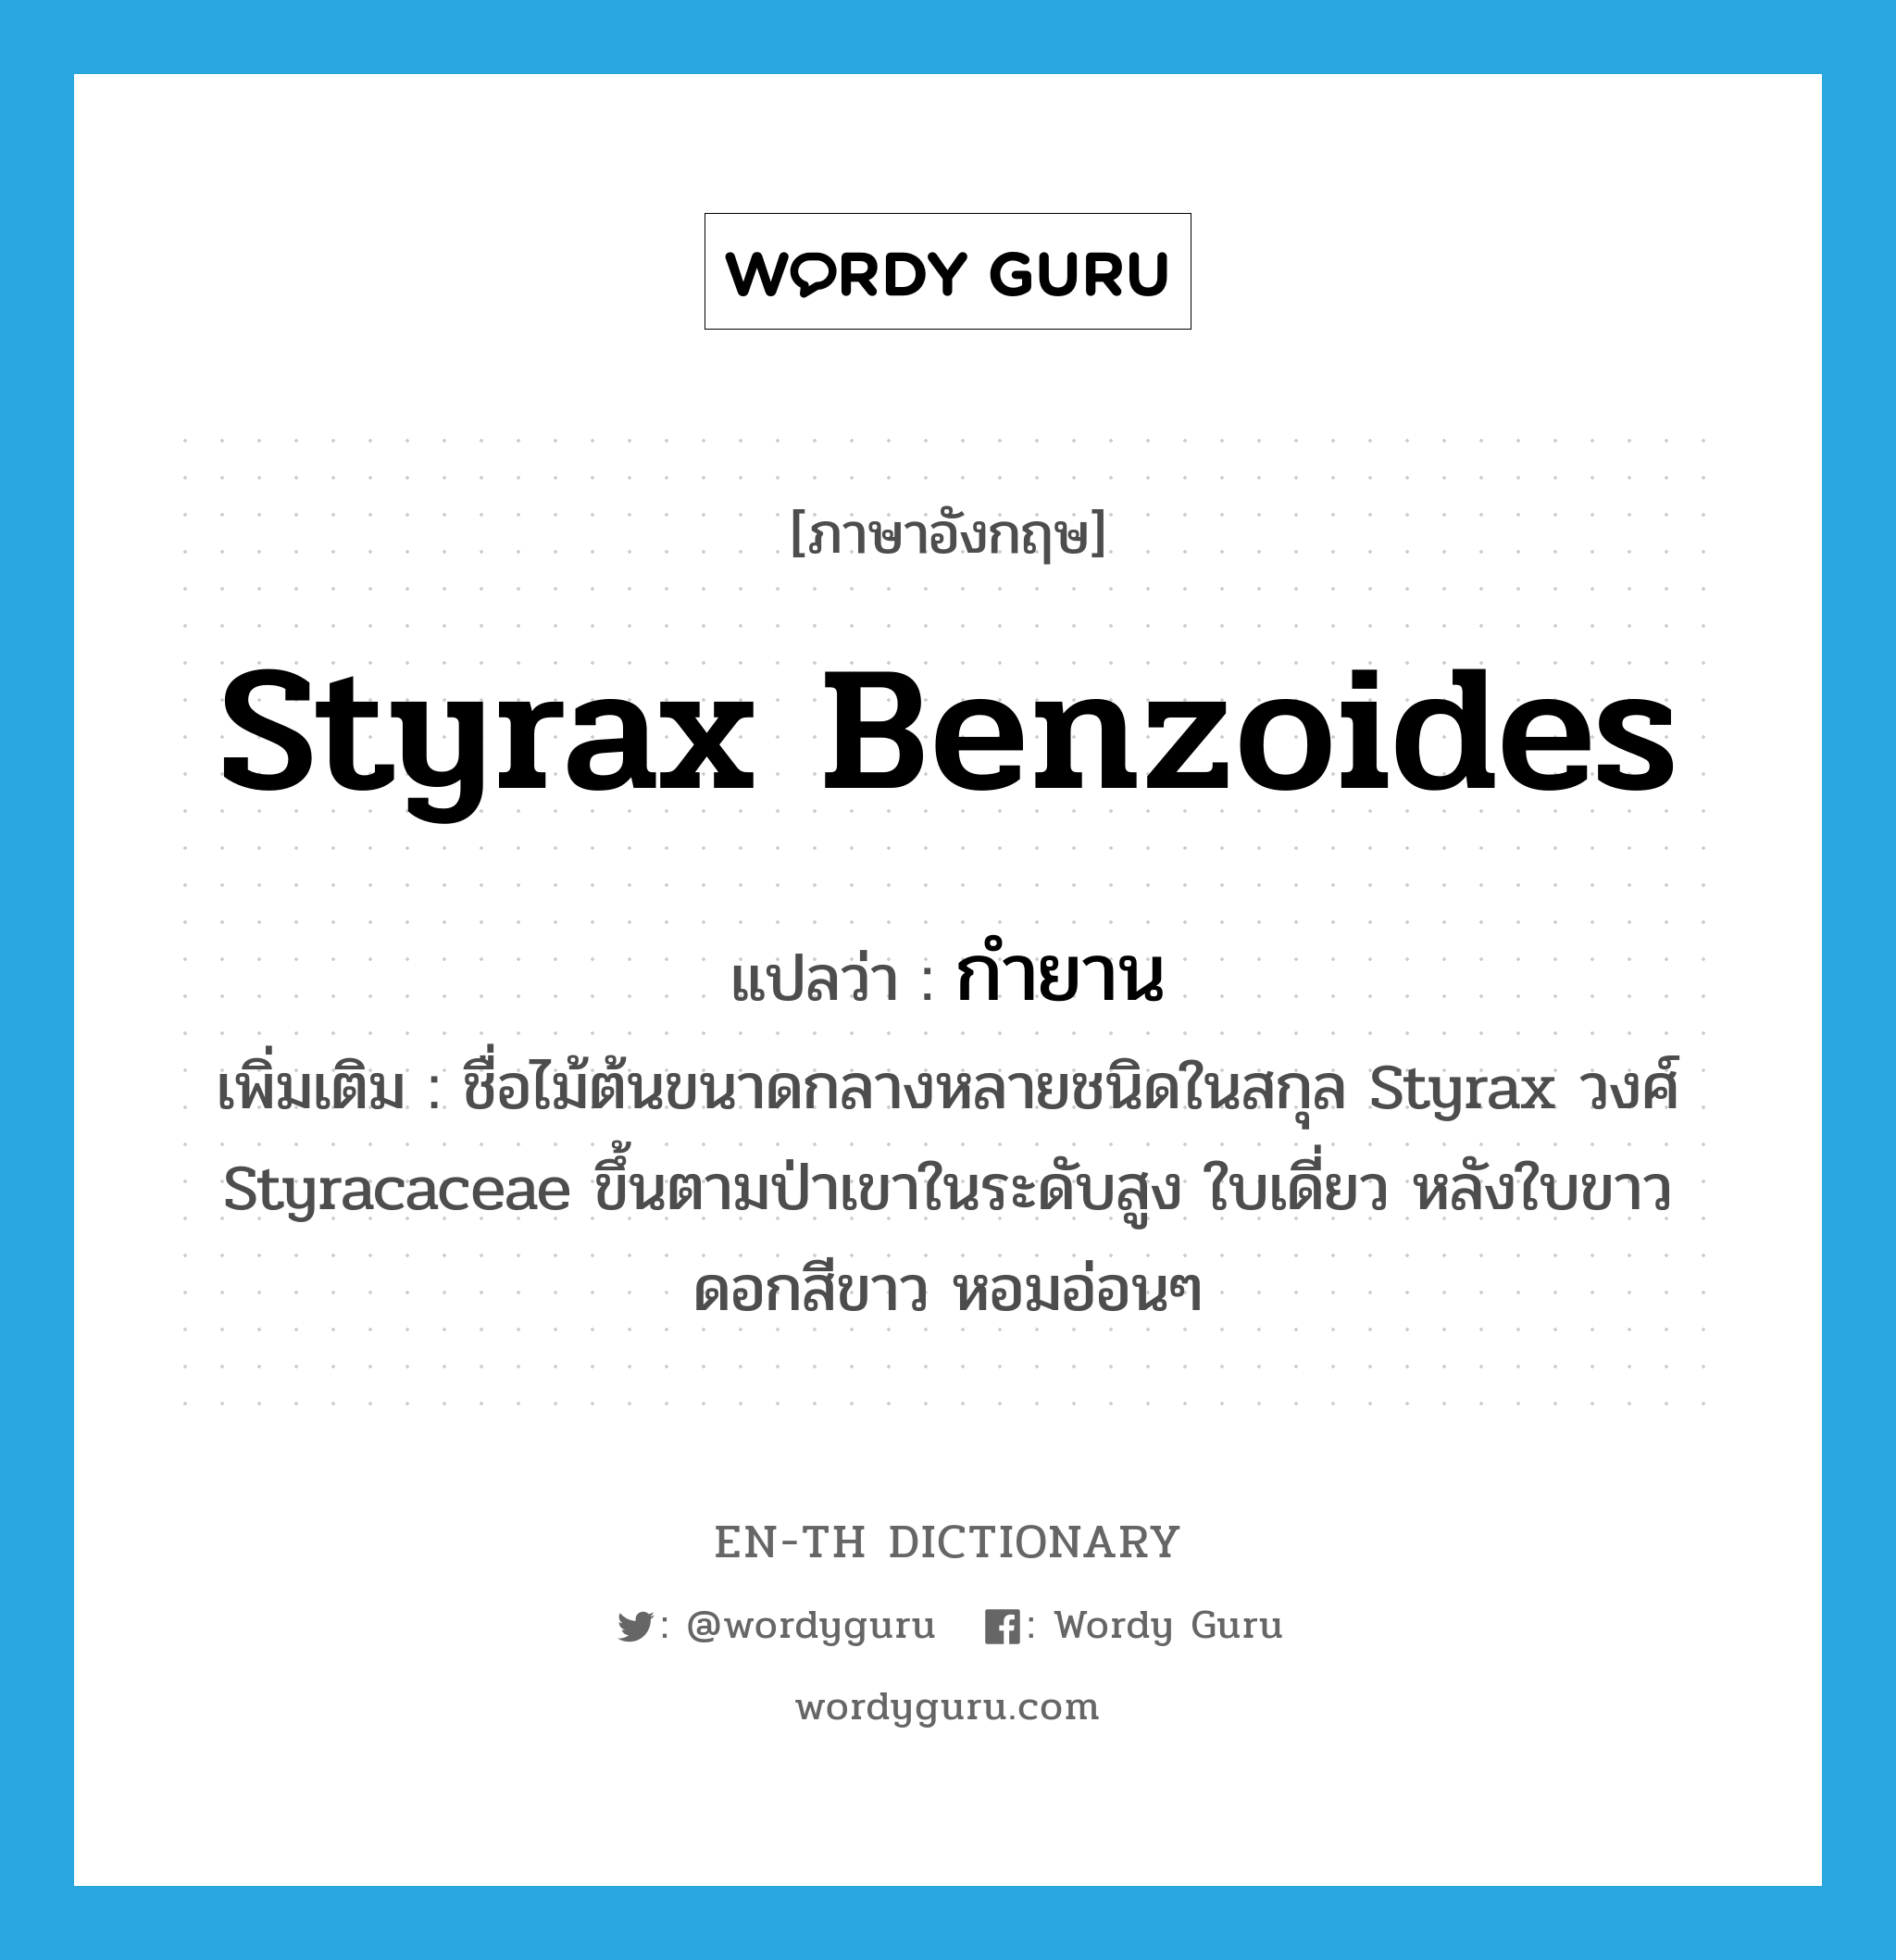 Styrax benzoides แปลว่า?, คำศัพท์ภาษาอังกฤษ Styrax benzoides แปลว่า กำยาน ประเภท N เพิ่มเติม ชื่อไม้ต้นขนาดกลางหลายชนิดในสกุล Styrax วงศ์ Styracaceae ขึ้นตามป่าเขาในระดับสูง ใบเดี่ยว หลังใบขาว ดอกสีขาว หอมอ่อนๆ หมวด N